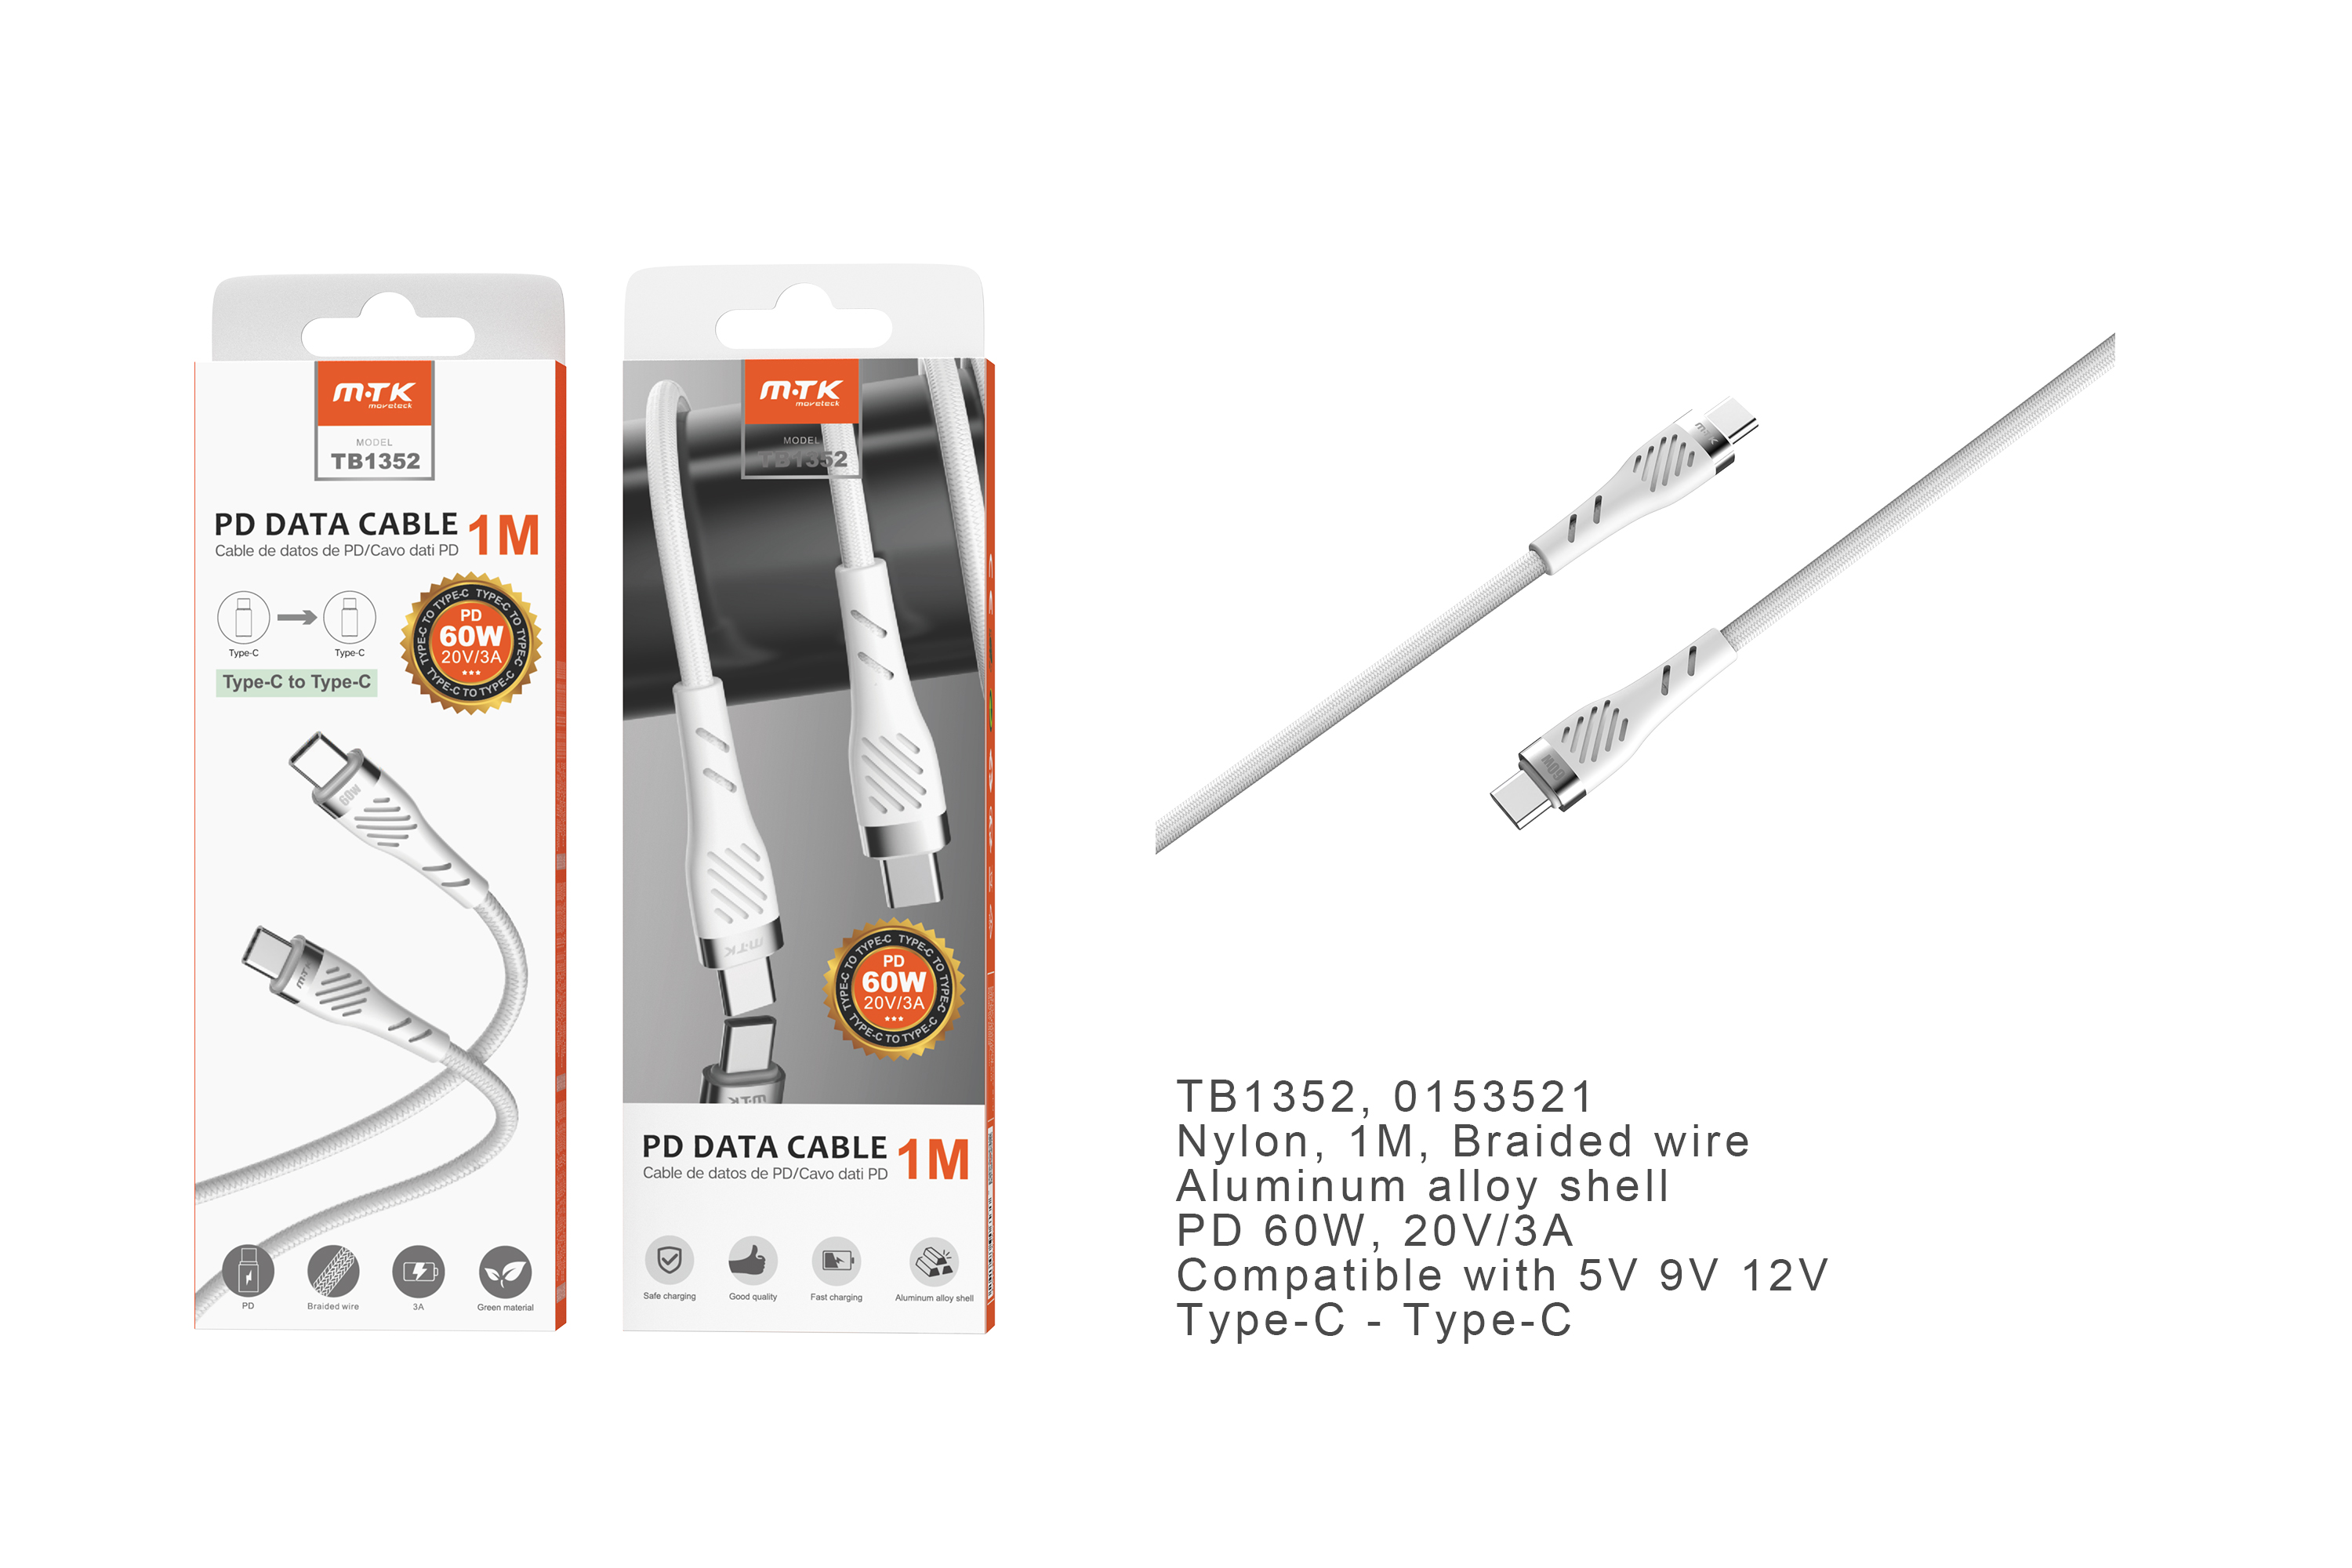 TB1352  BL Cable de Datos Camyl nylon trenzado , Type-C a Type-C ,Carga Rapida PD 60W/20V/3A , Cable